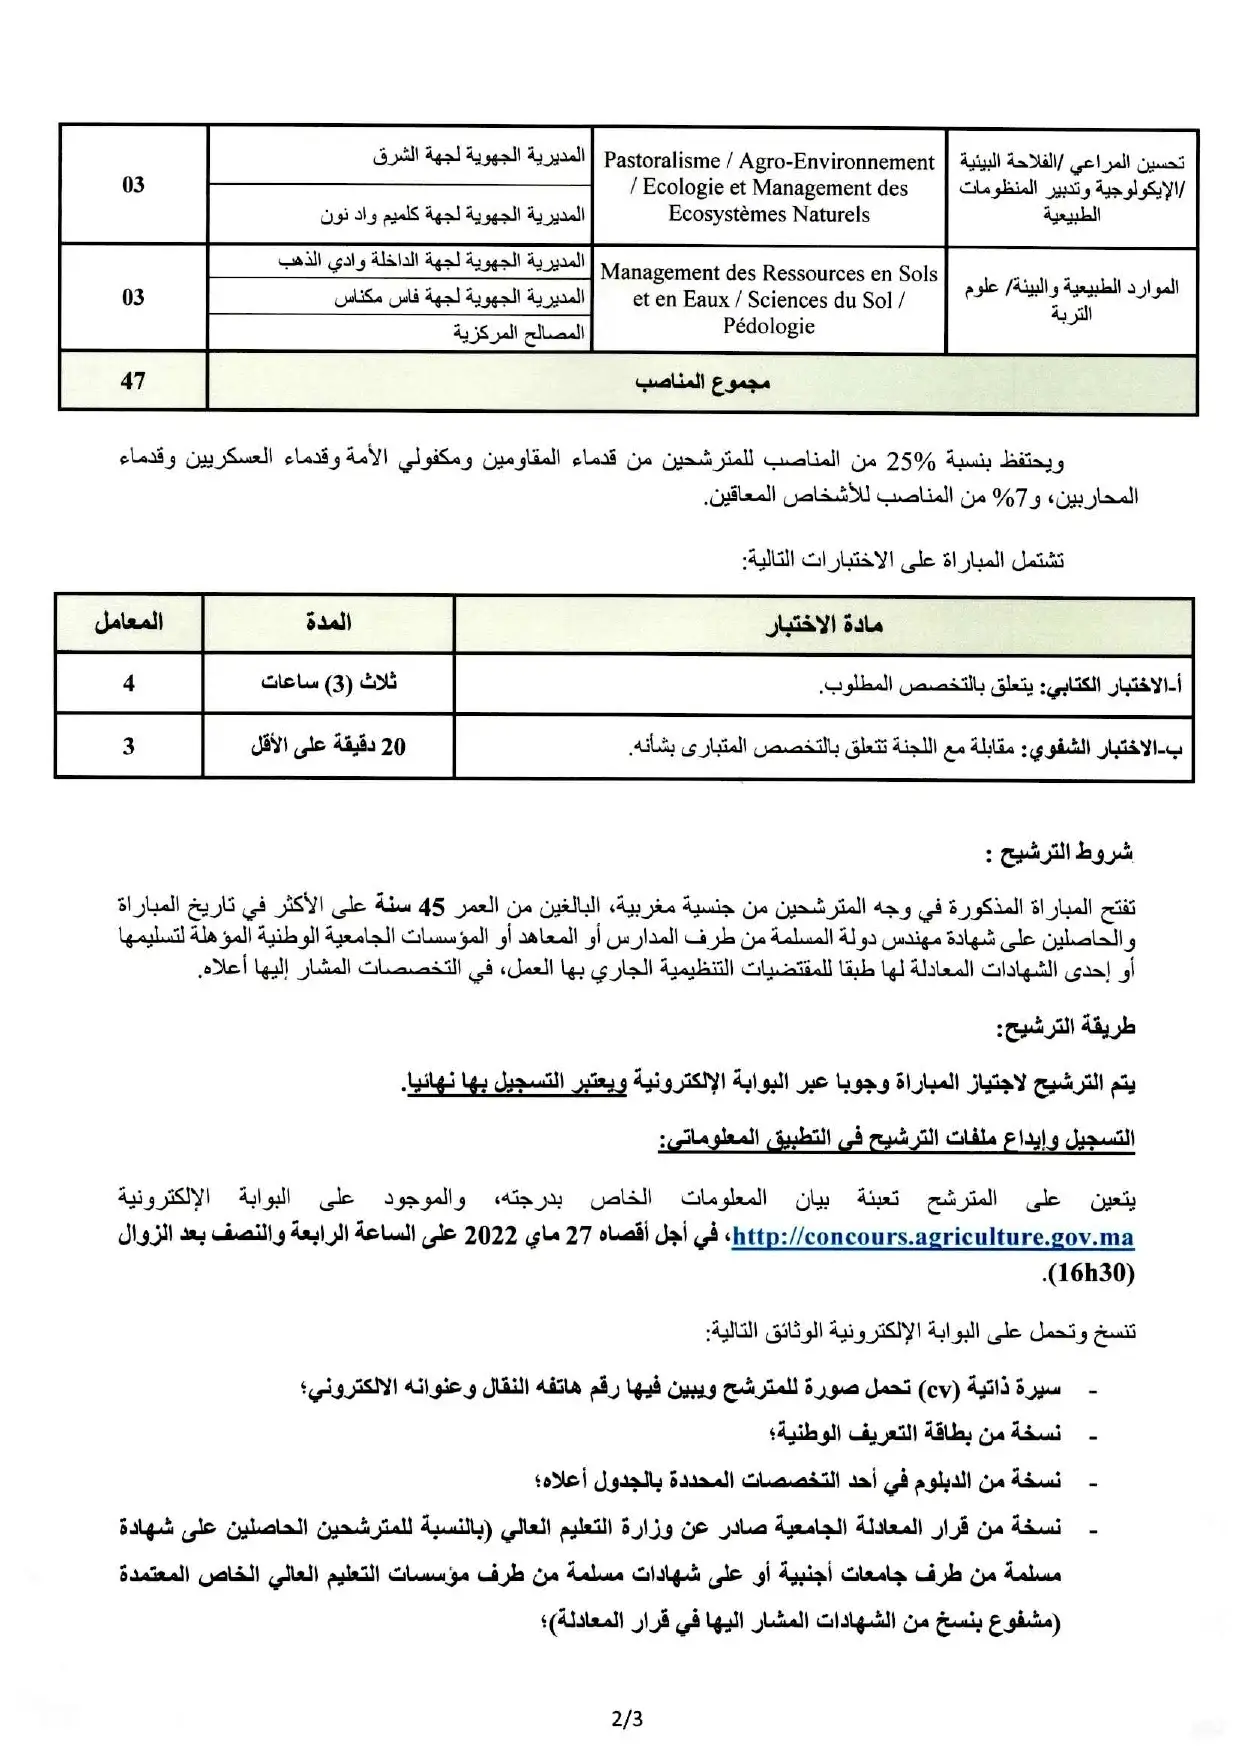 Concours de recrutement de Ingénieur d'Etat (47 postes) au Ministère de l’Agriculture